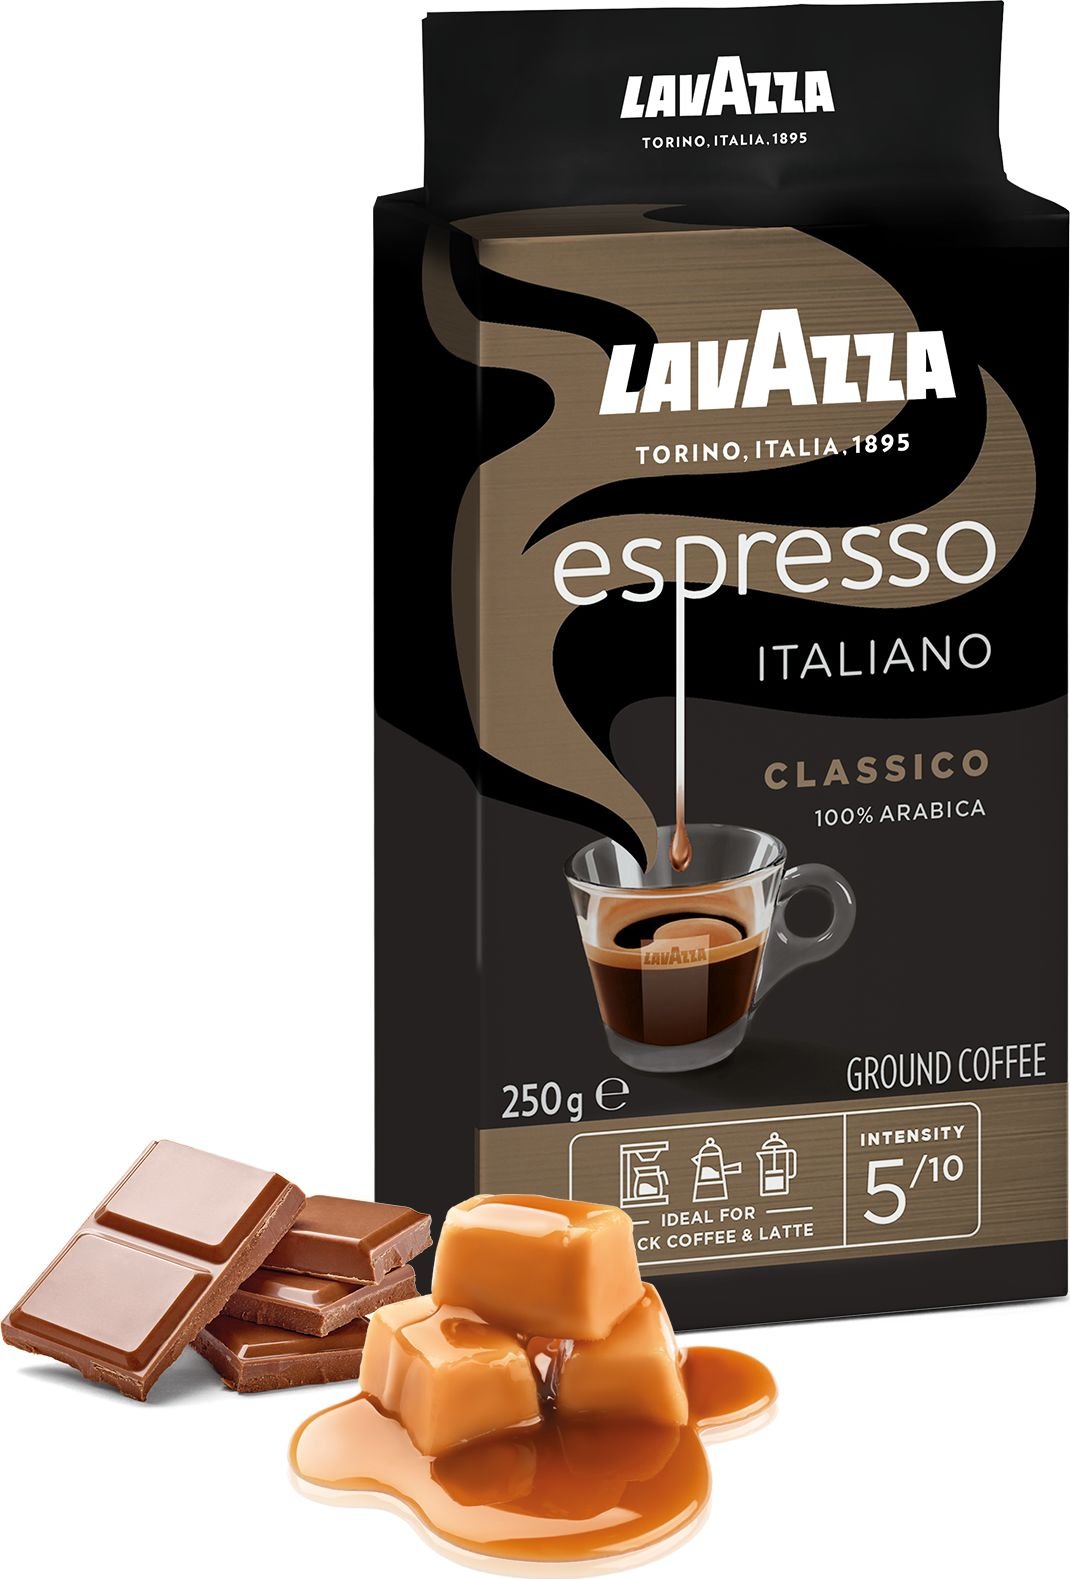 Cafea - Cafea macinata Lavazza Espresso Italiano Classico, 250g